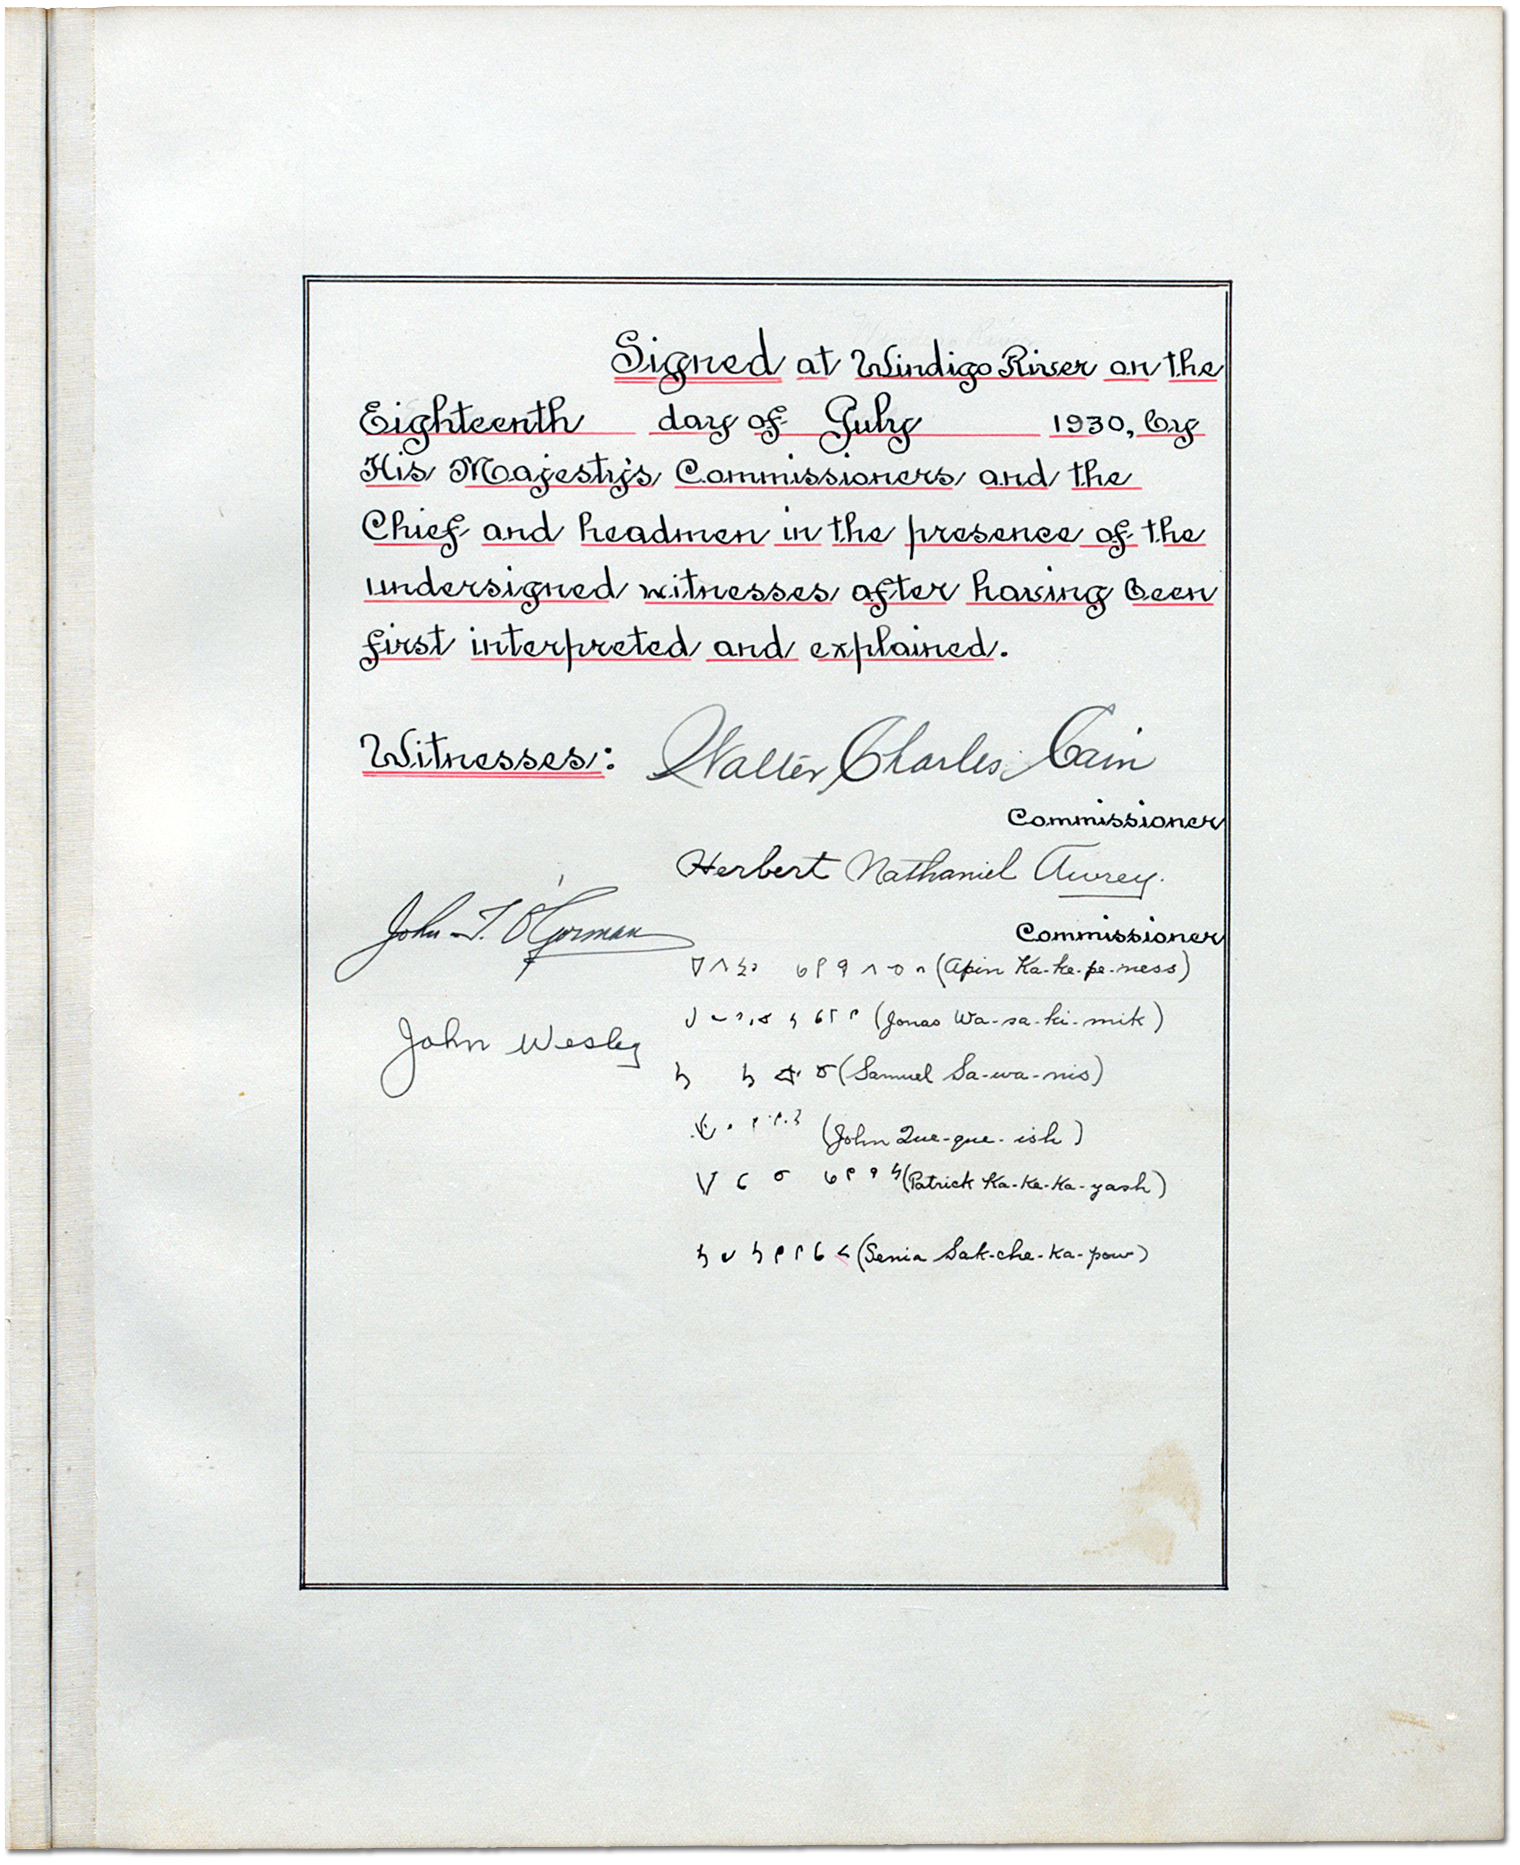 James Bay Treaty (Treaty No. 9) - Adhesions [Signatures]